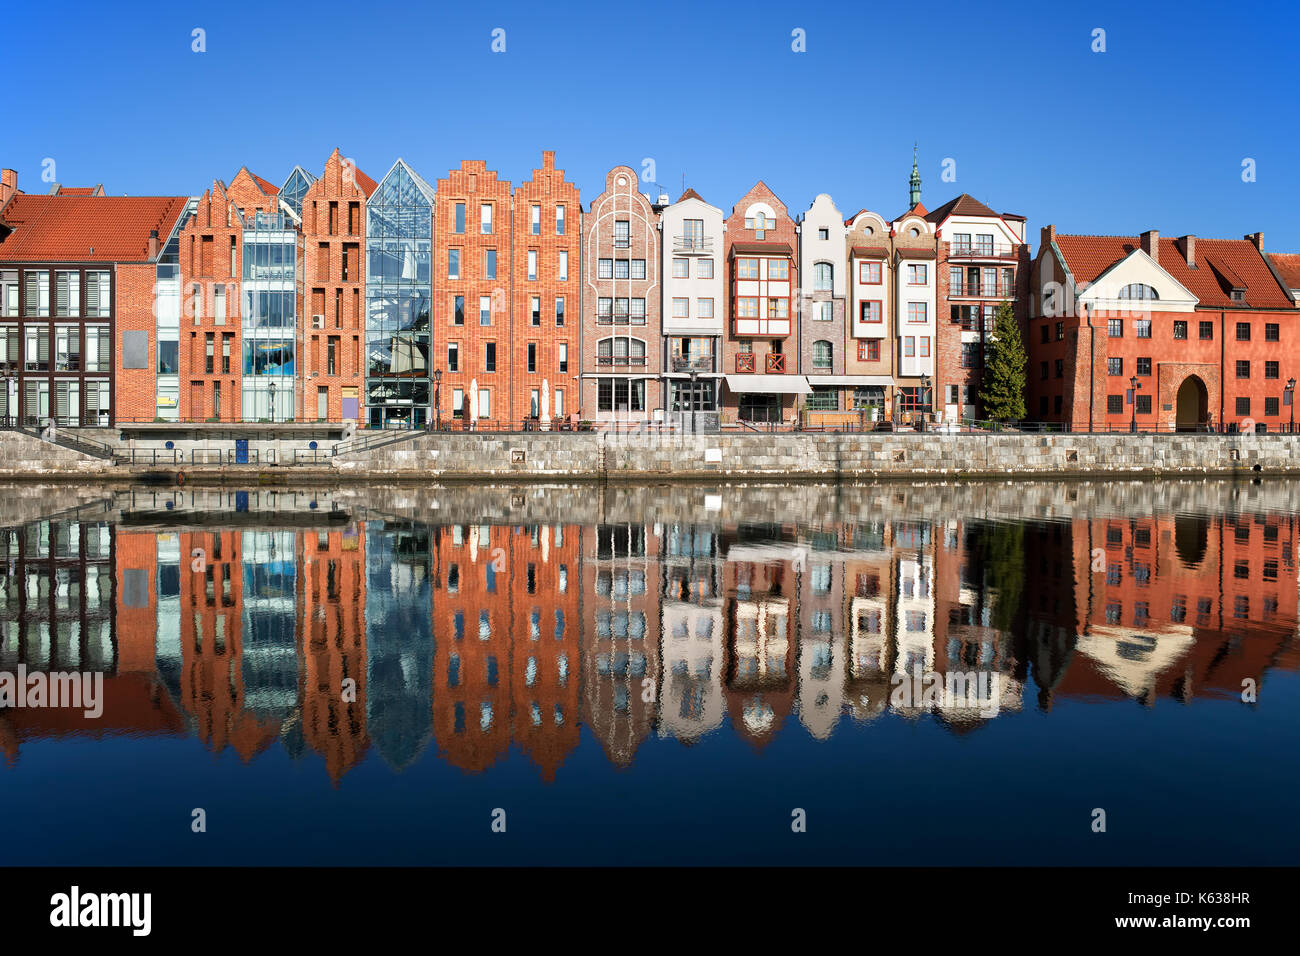 Stadt Danzig, Polen, Reihe von schmalen Häuser am Ufer des Flusses mit Spiegel Spiegelbild im Wasser. Stockfoto